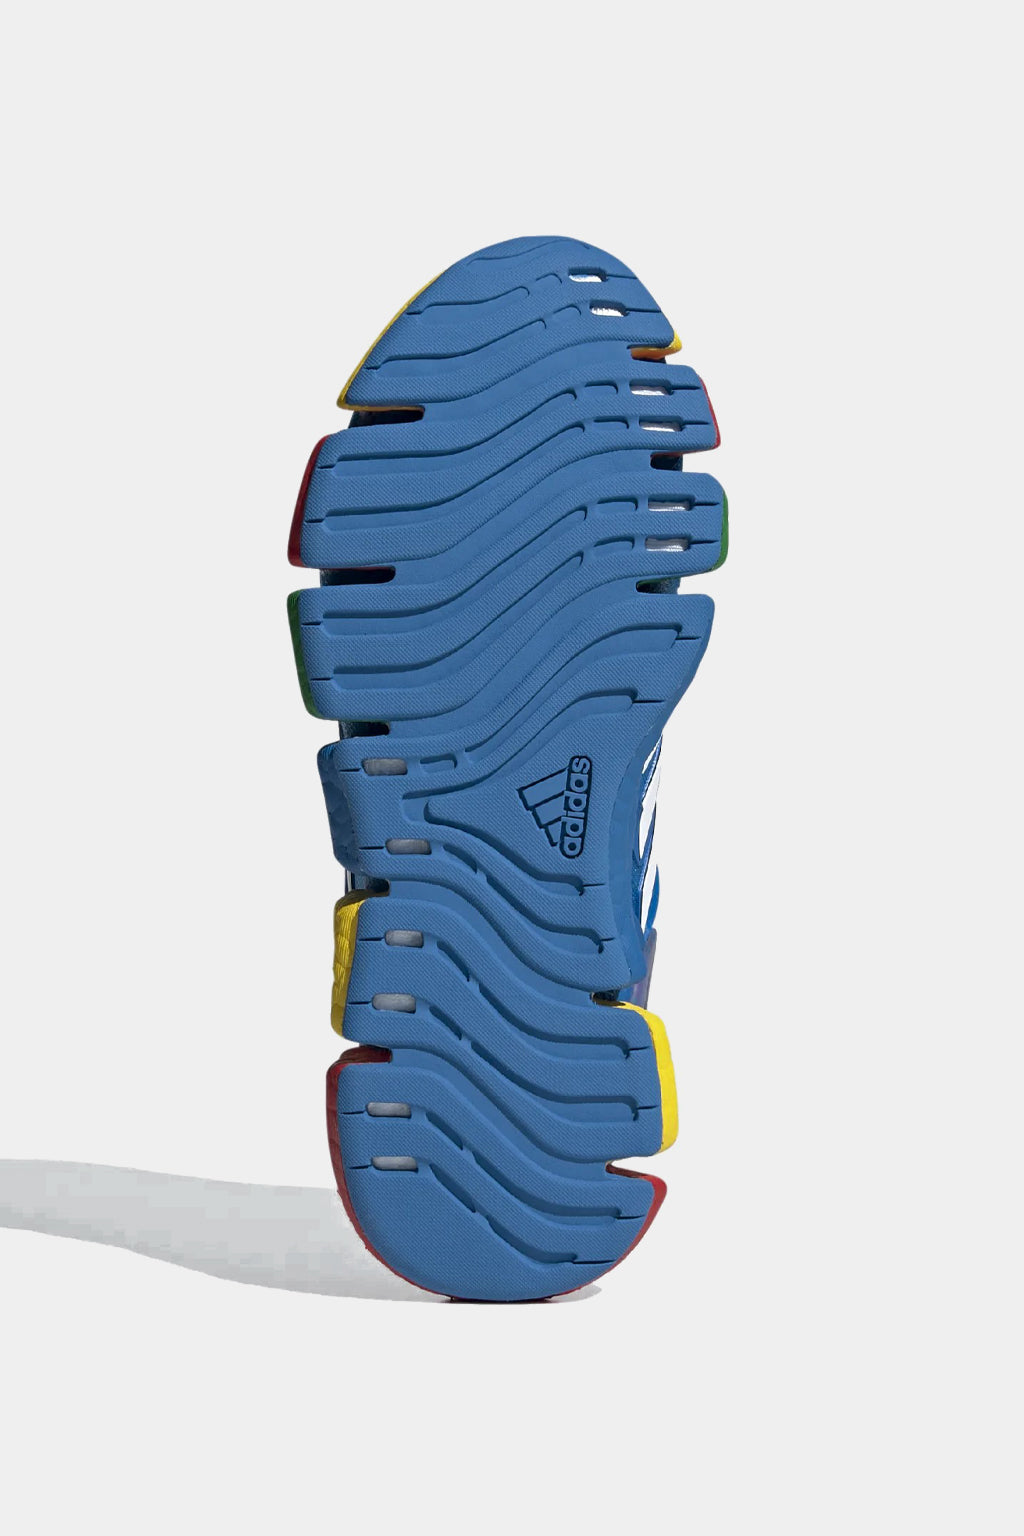 Adidas - Climacool Vento X Lego J